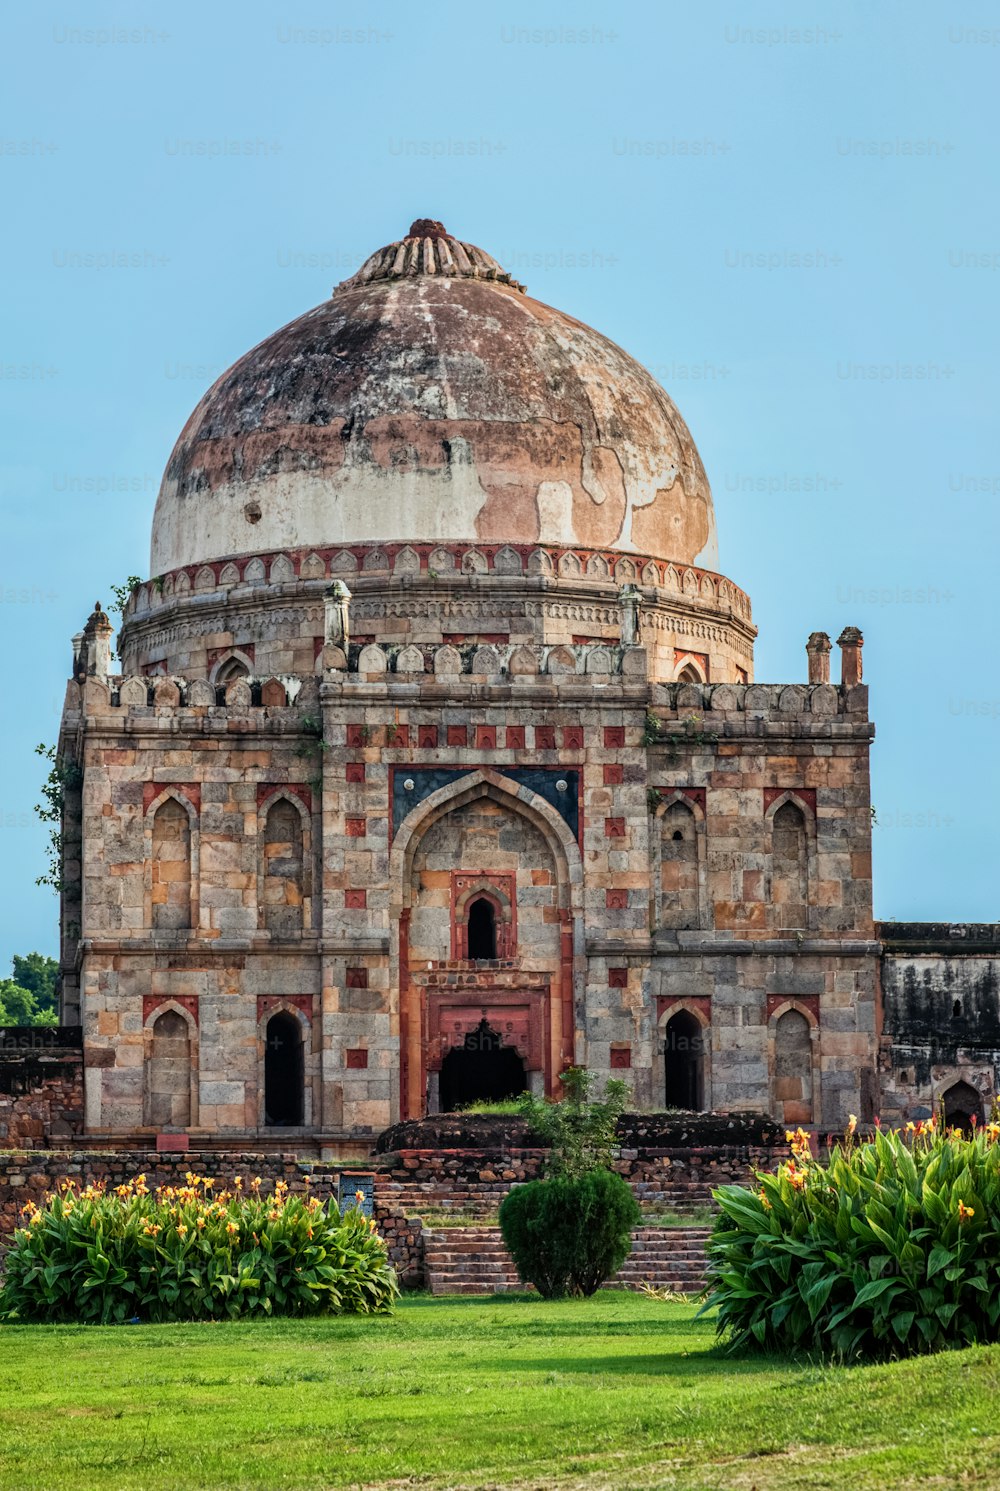 Sheesh Gumbad - tombeau islamique de la dernière lignée de la dynastie Lodhi. Il est situé dans le parc de la ville de Lodi Gardens à Delhi, en Inde